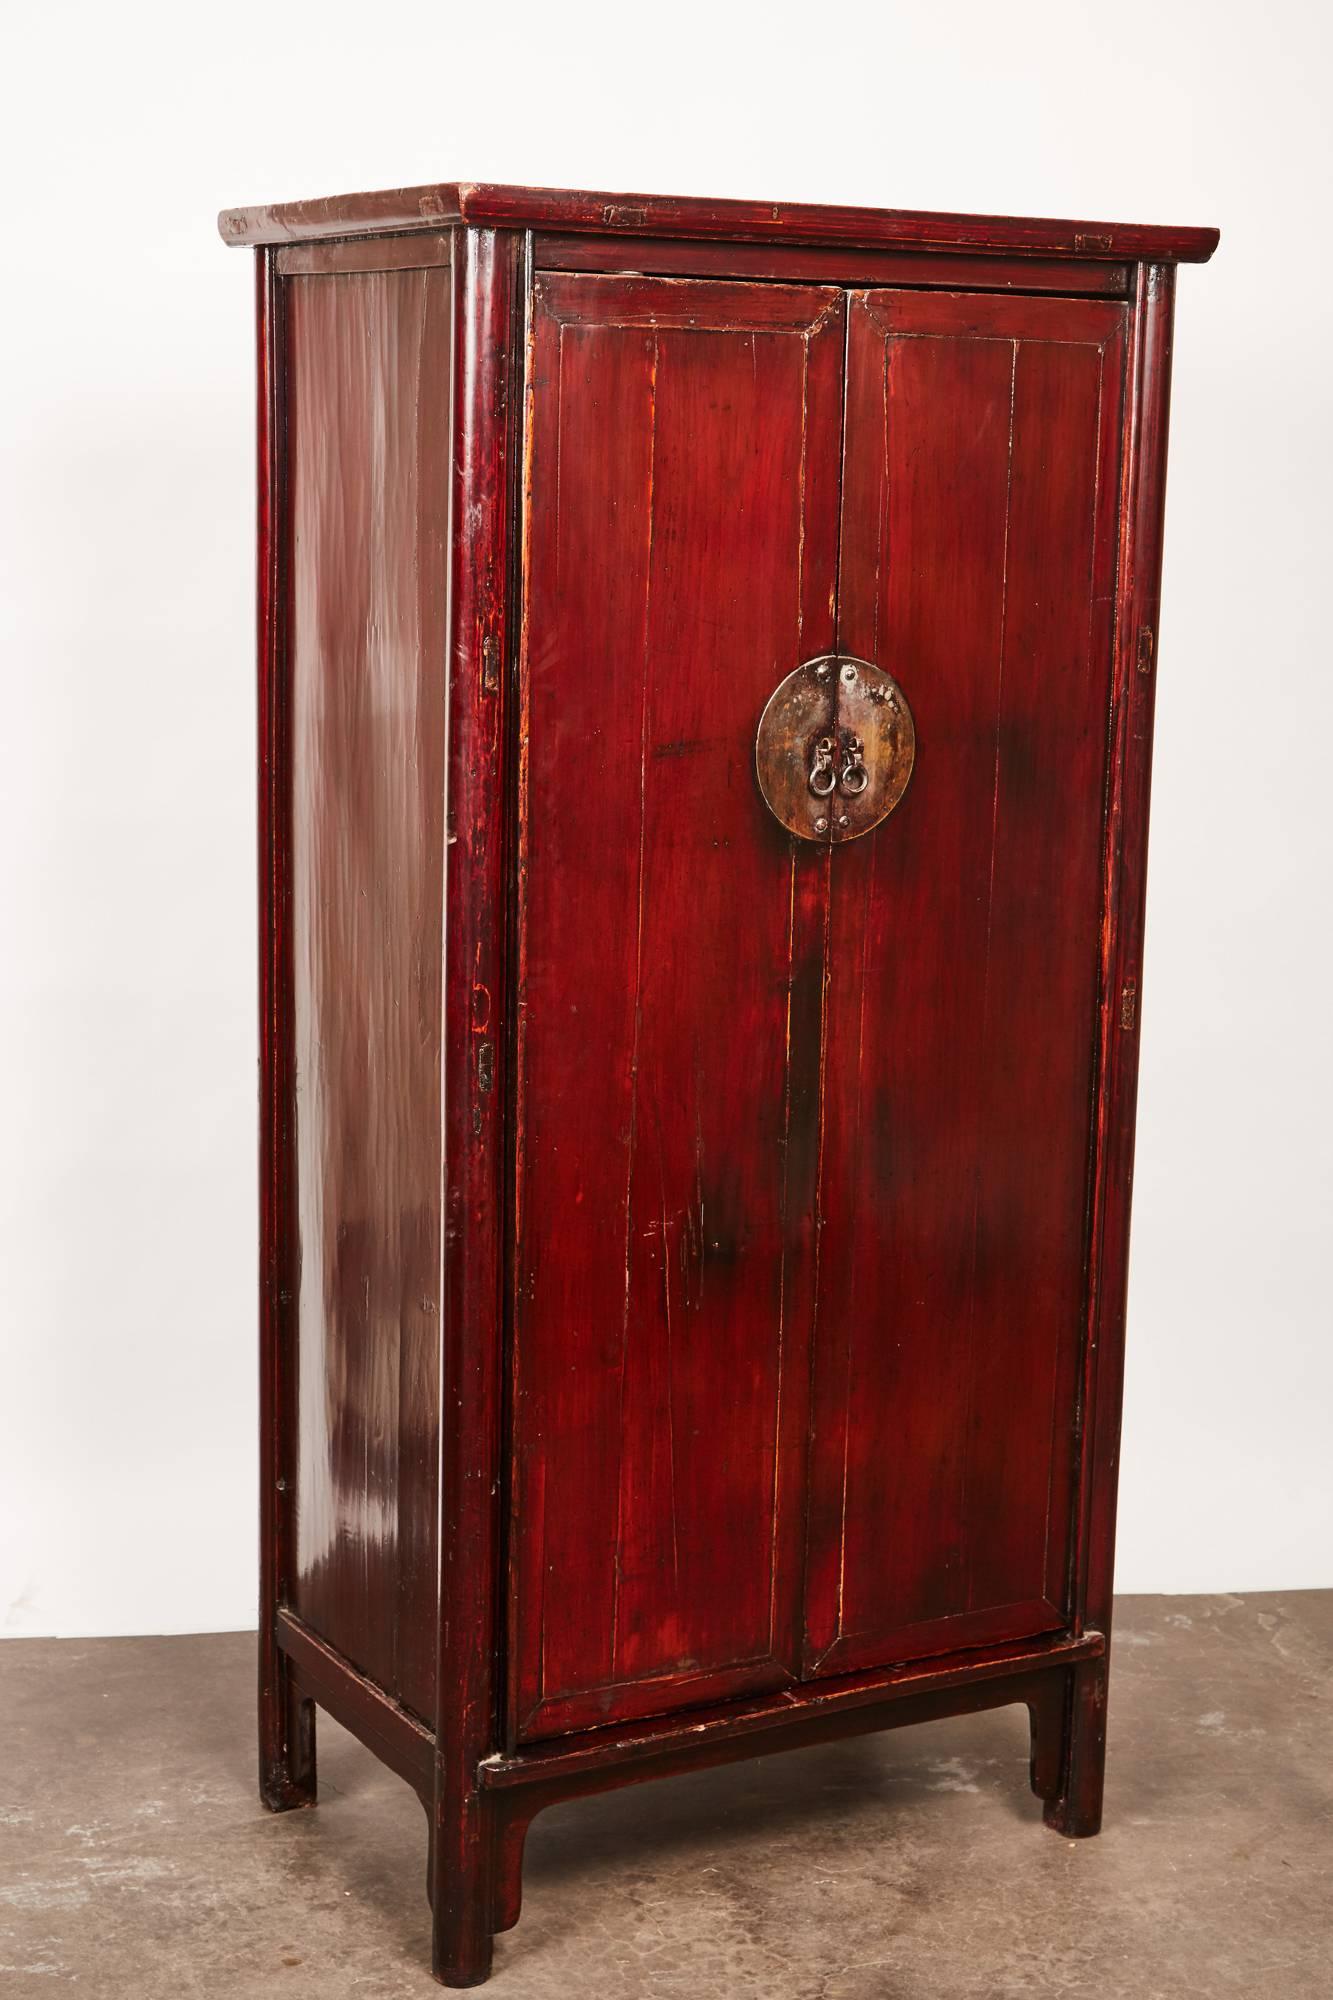 Ein lackierter chinesischer zweitüriger Schrank aus dem 18. Jahrhundert mit einer Reihe kleiner runder Beine. Dieses schlichte und klassische Stück stammt aus der Provinz Henan und enthält alle originalen Beschläge und Verarbeitungen.